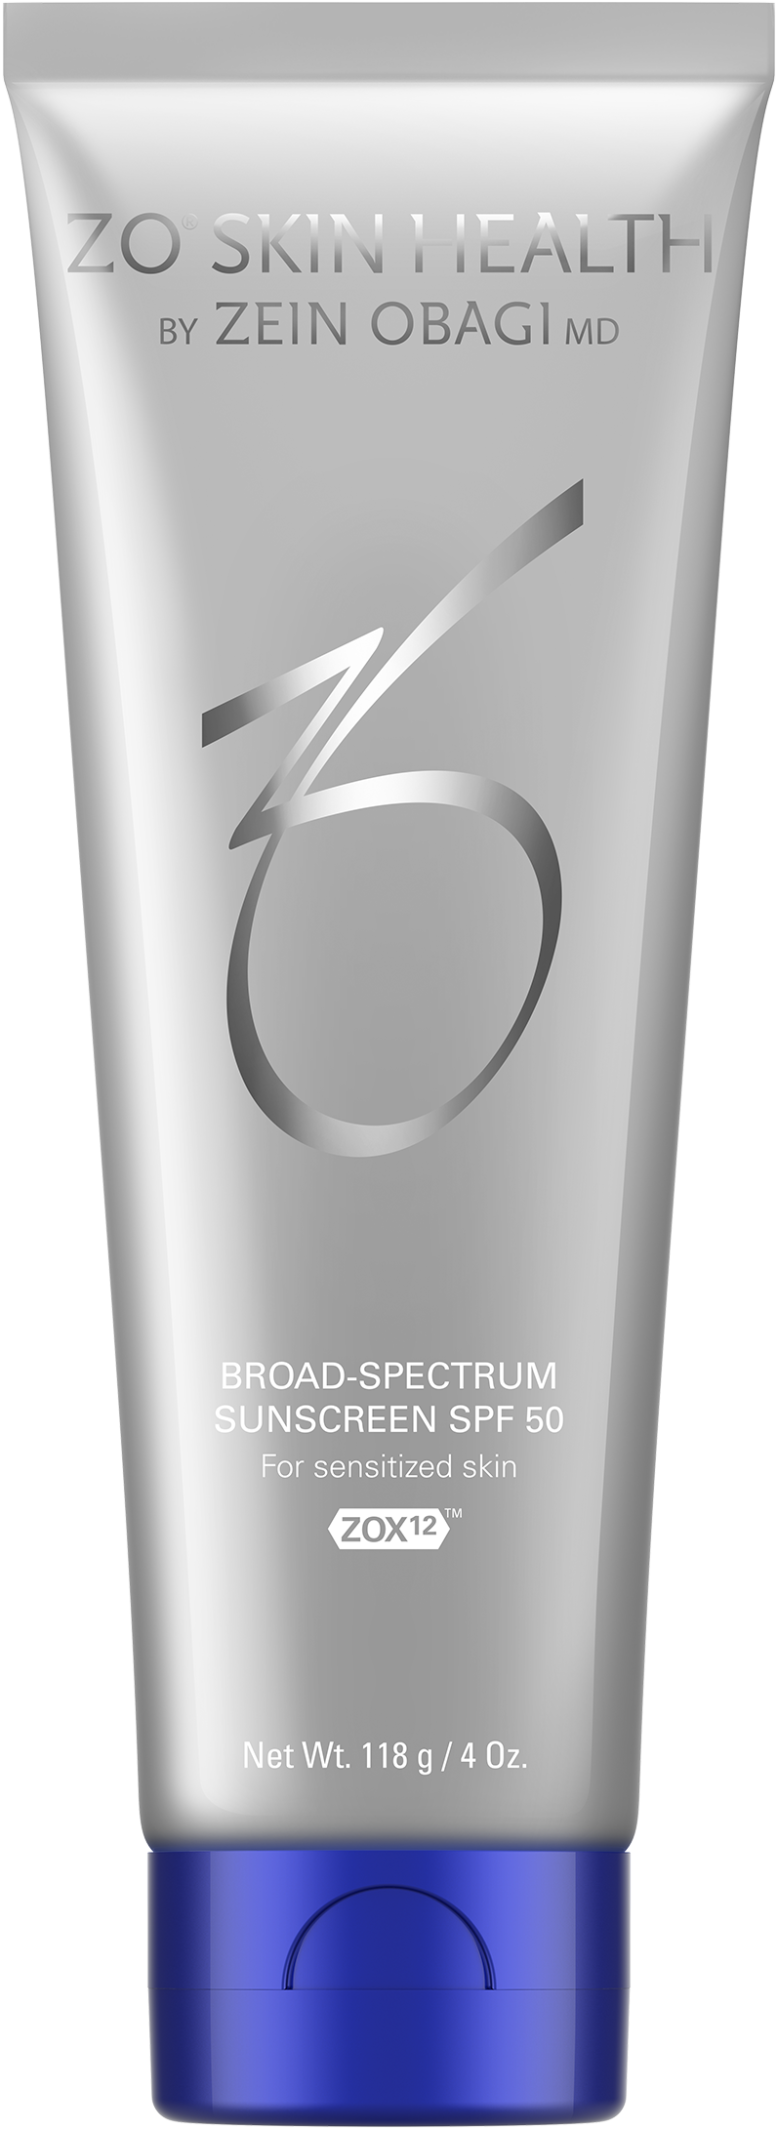 Zo Skin Broad-Spectrum Sunscreen SPF 50 Крем для лица с солнцезащитным фильтром широкого спектра, 118 г